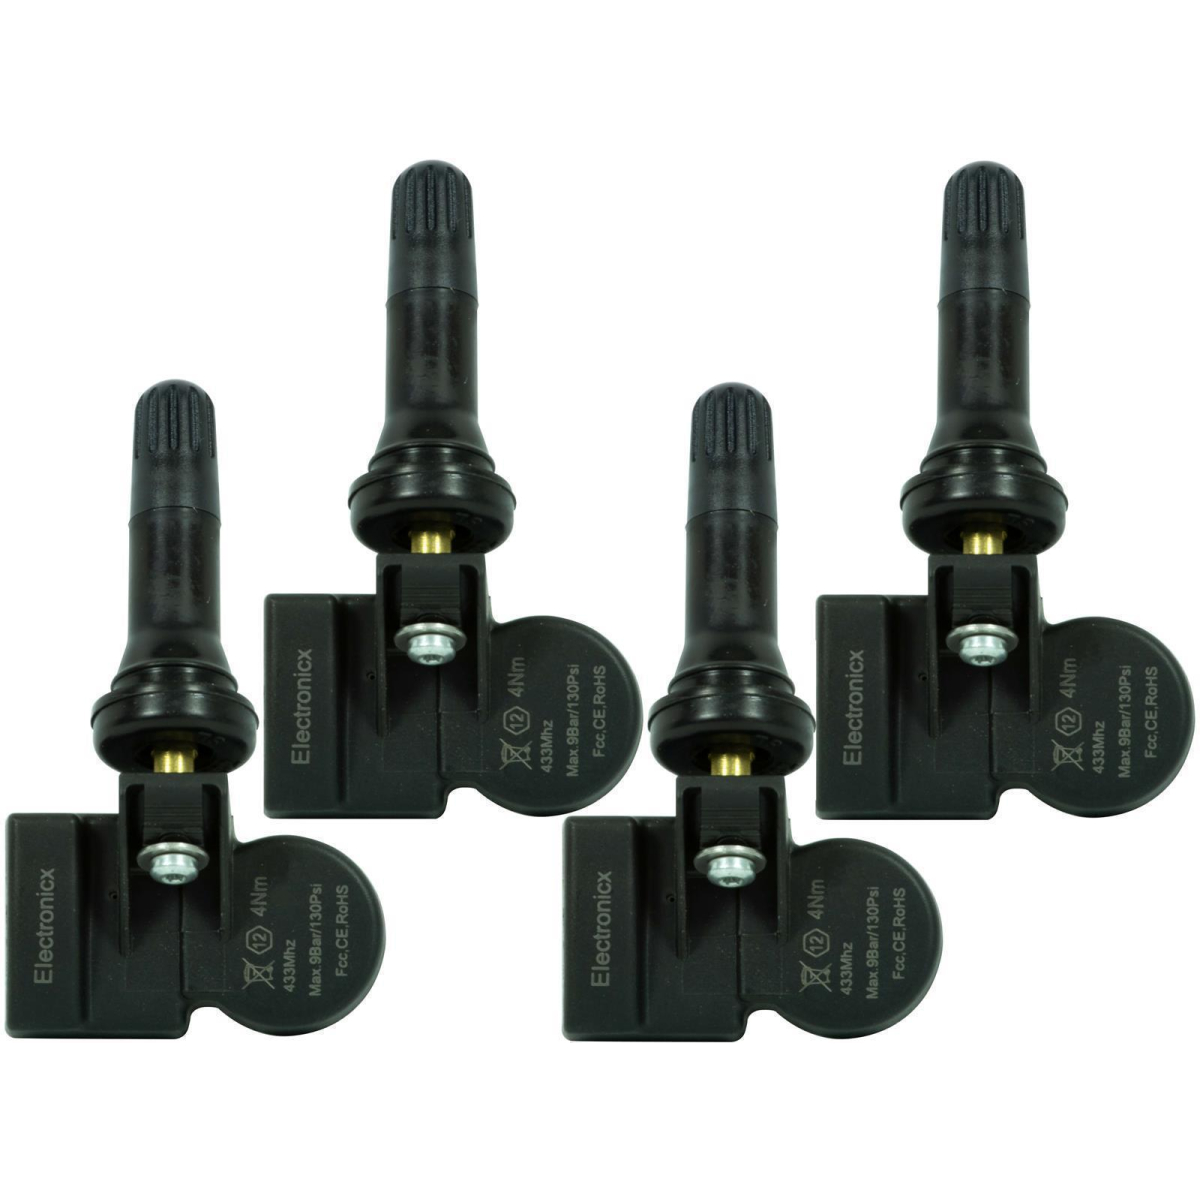 4 tire pressure sensors rdks sensors rubber valve for MINI Countryman 01.2009-06.2014